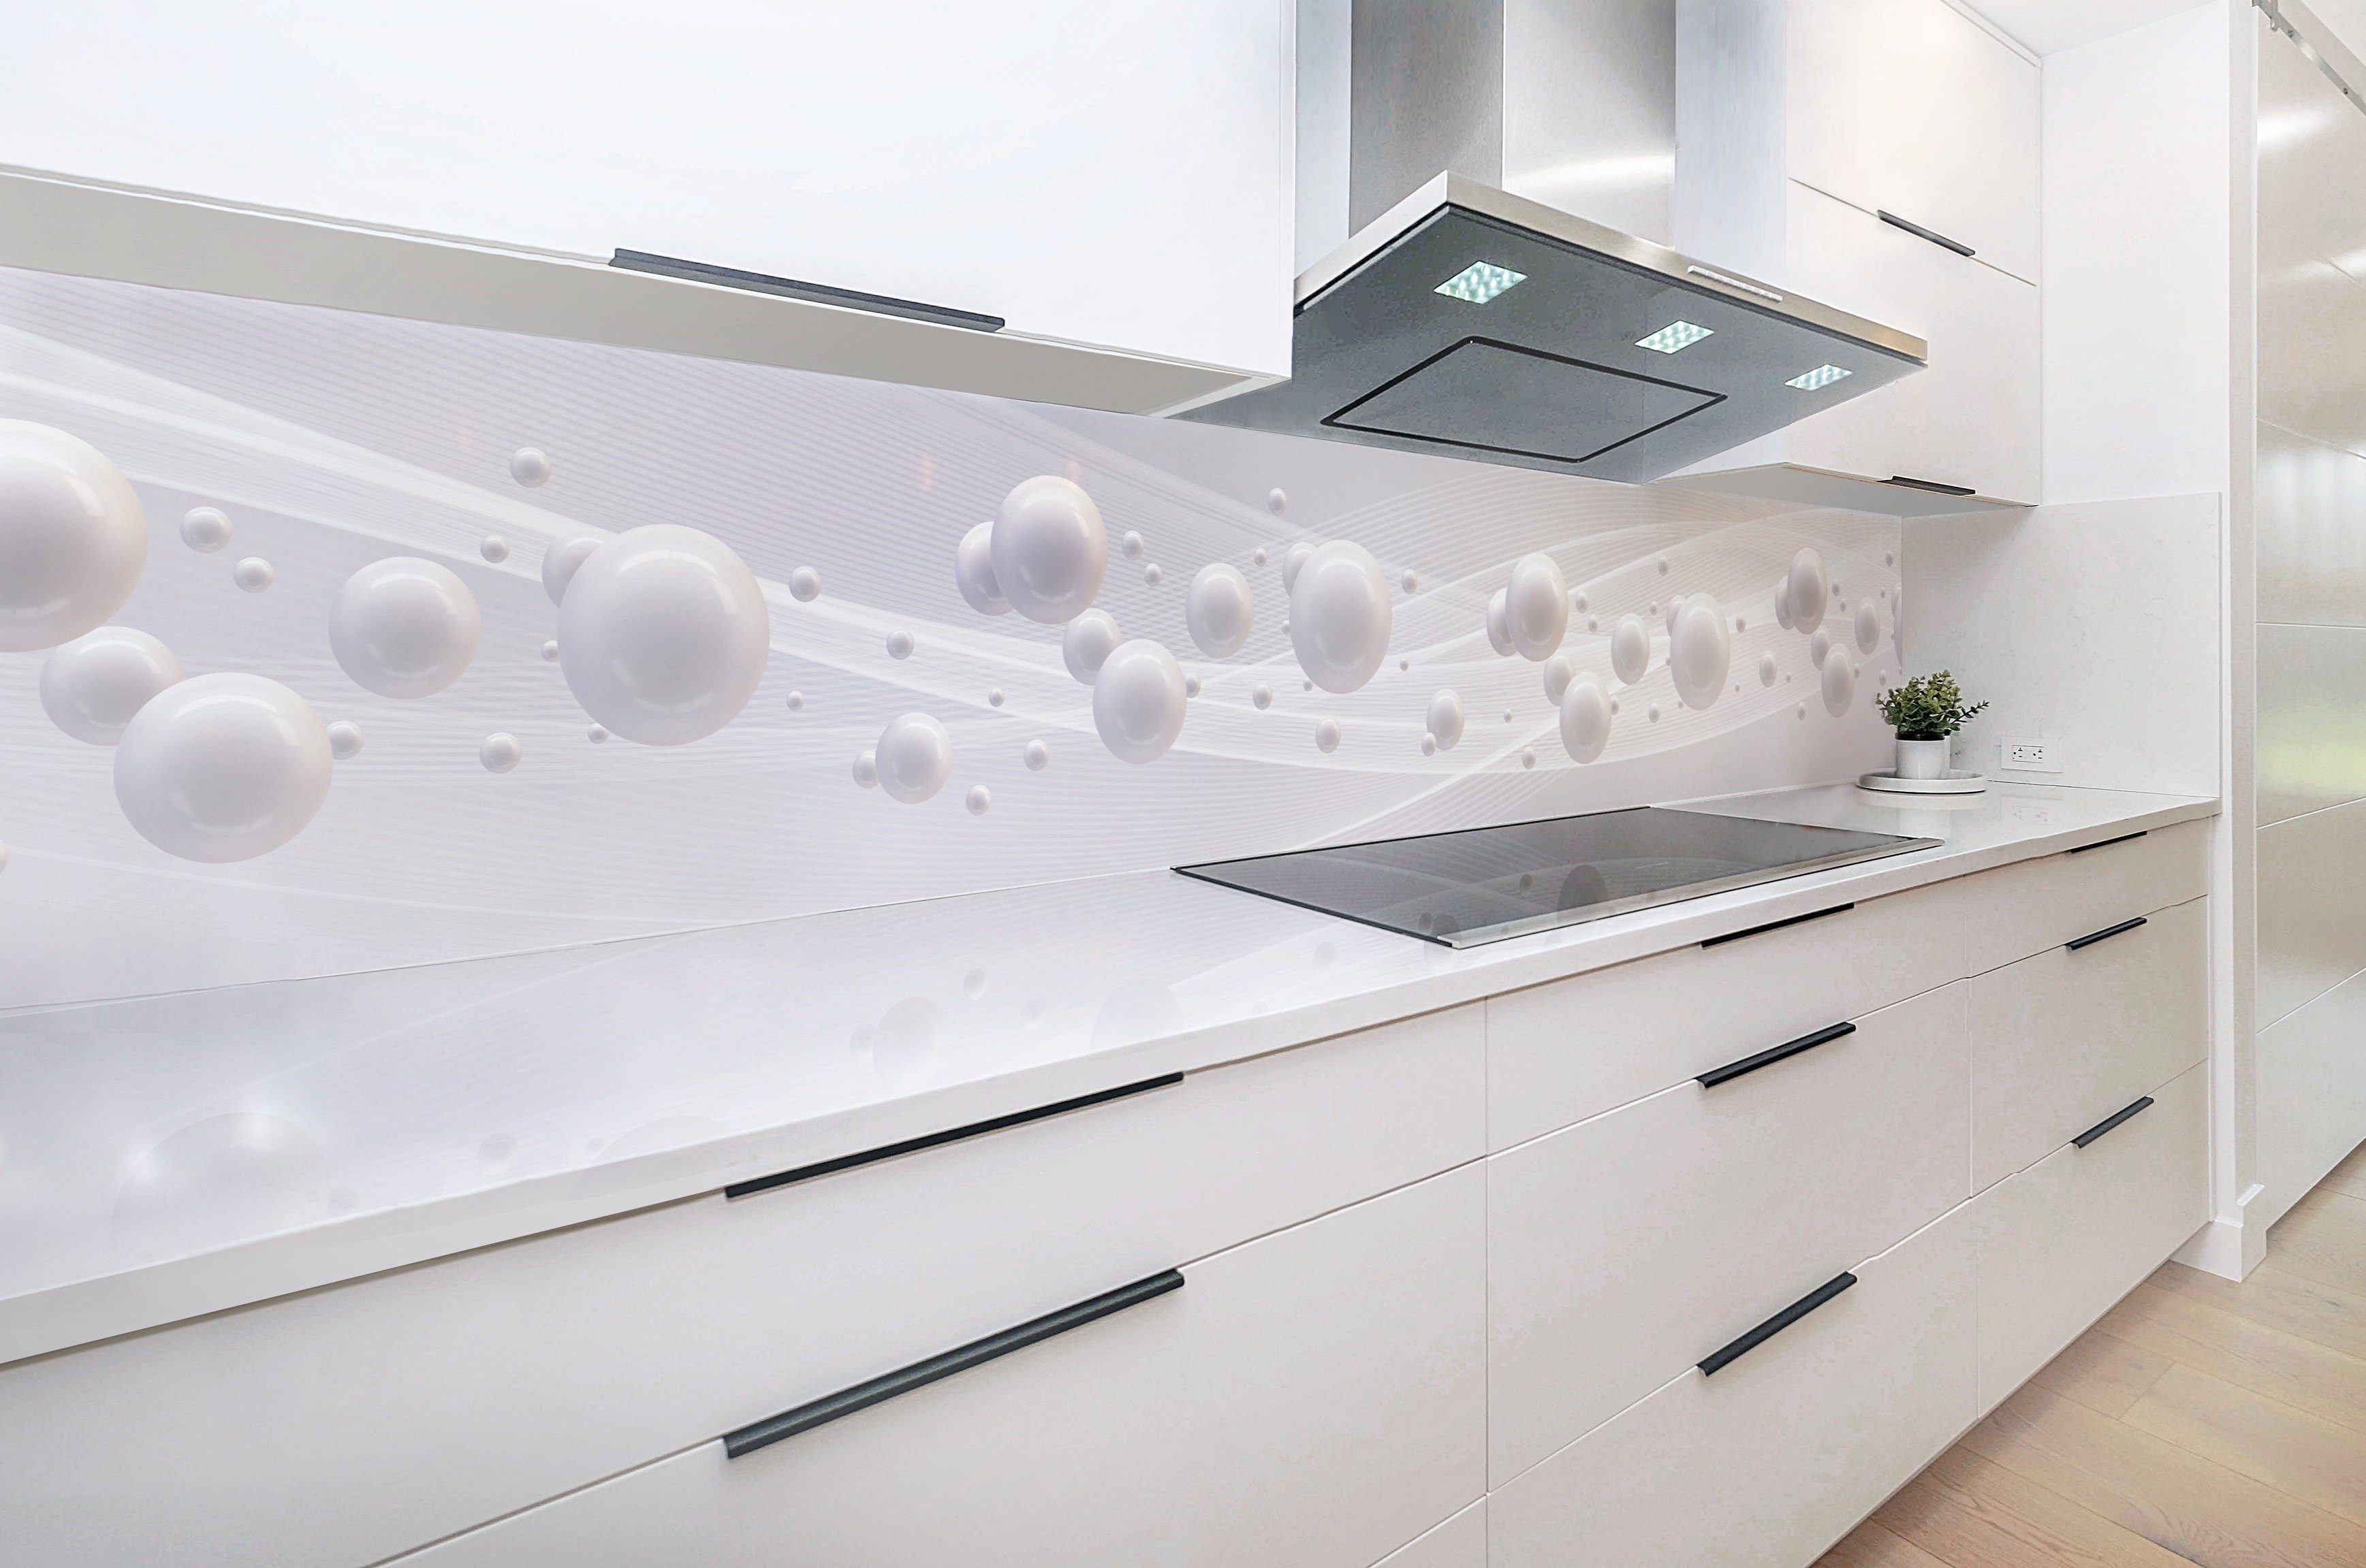 Rodnik Küchenrückwand Weiße Monolith Direktdruck mit DELUXE ABS-Kunststoff Platte in Kugeln, Qualität